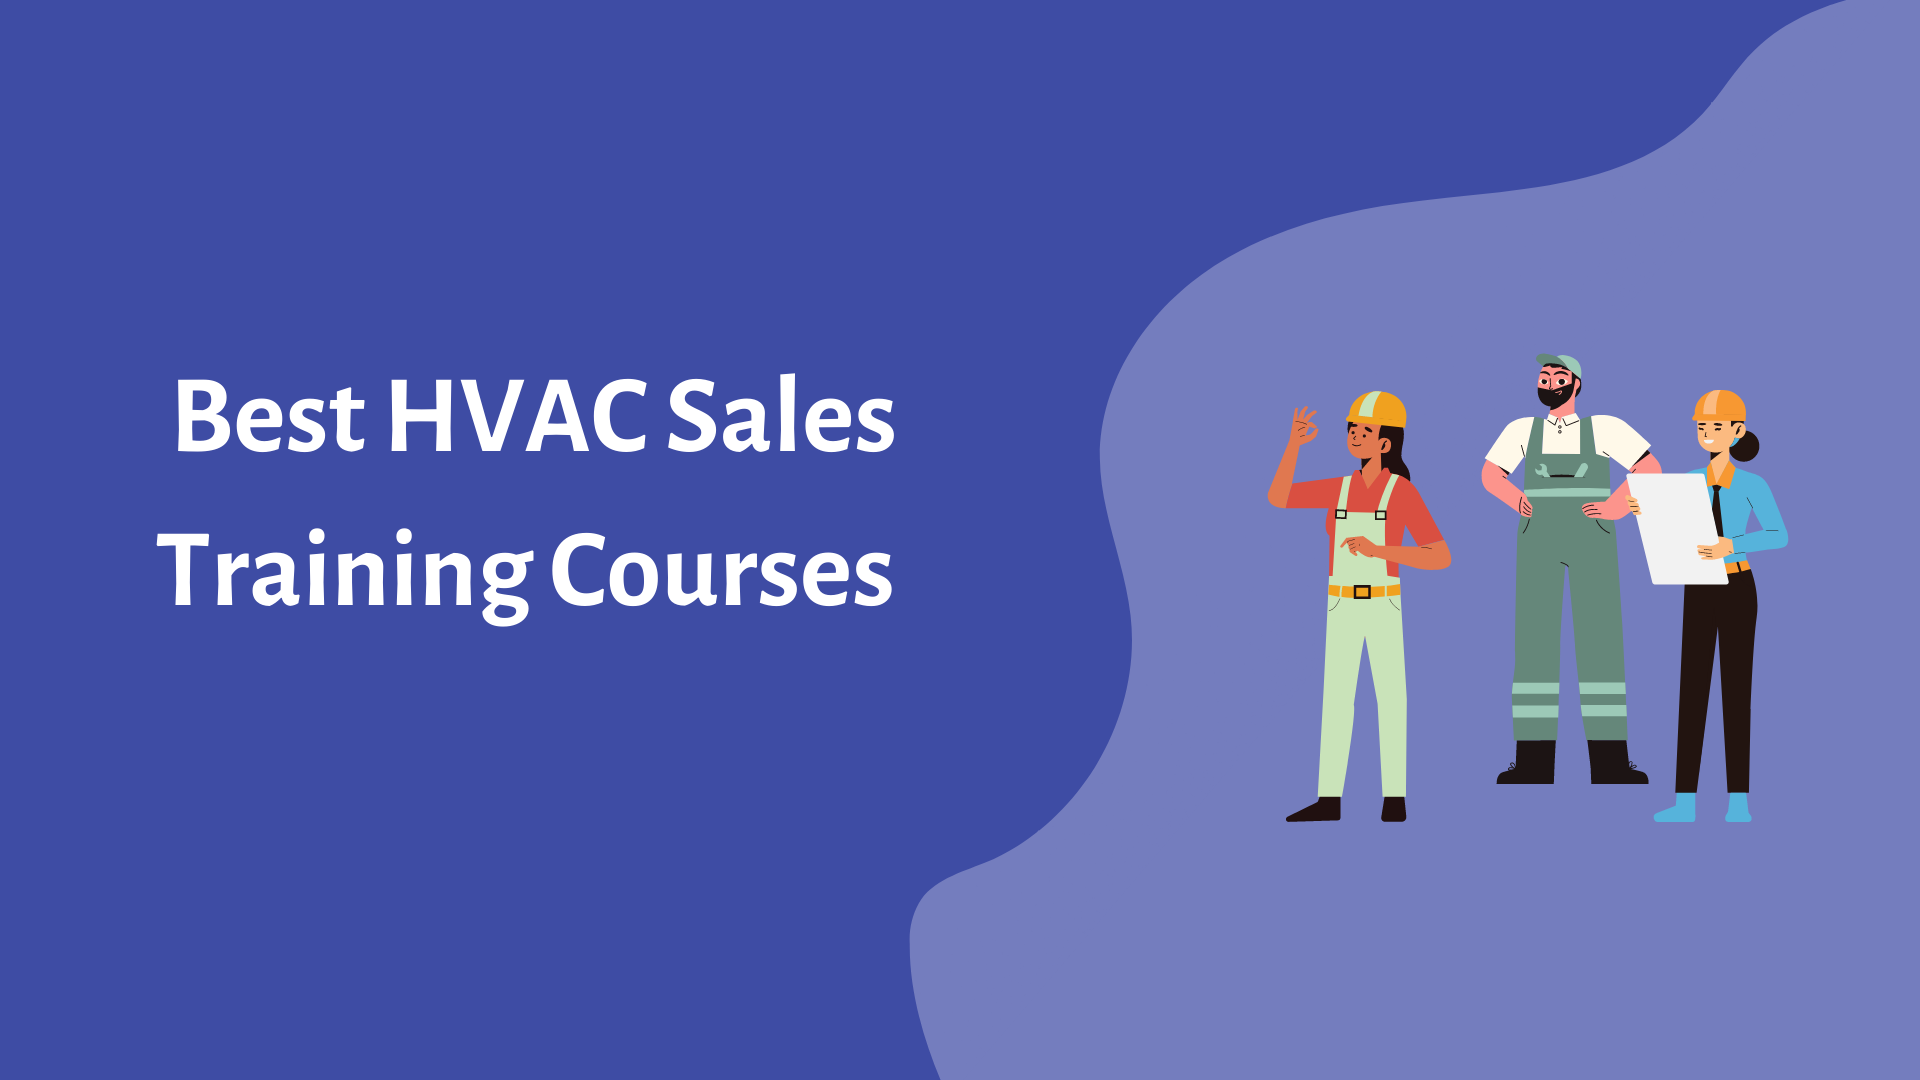 Best HVAC Sales Training Courses 2022